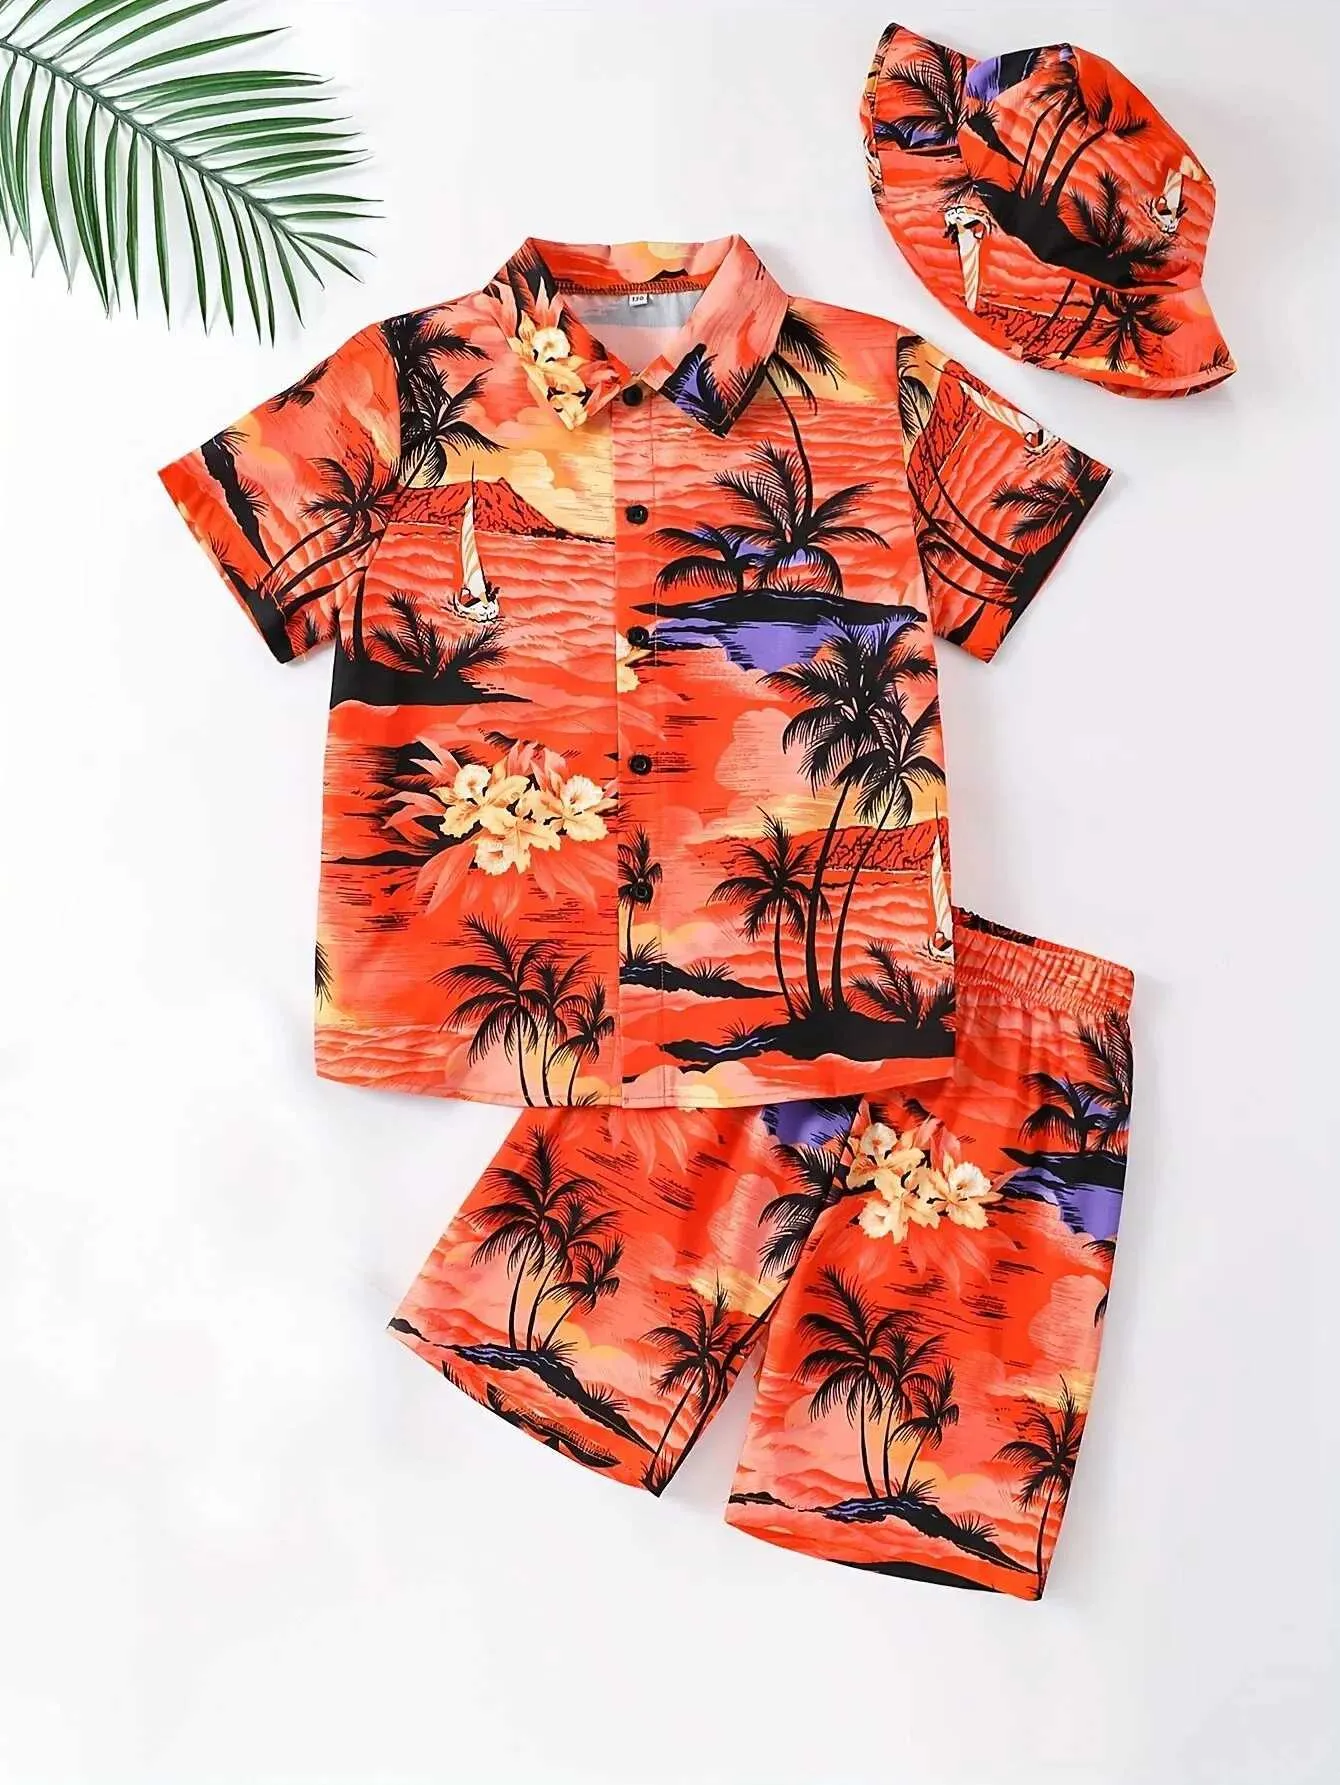 의류 세트 여름 어린이 패션 하와이 휴일 바람 코코넛 프린트 짧은 소매 꽃 셔츠 반바지 같은 컬러 모자 3 피스 세트 2405